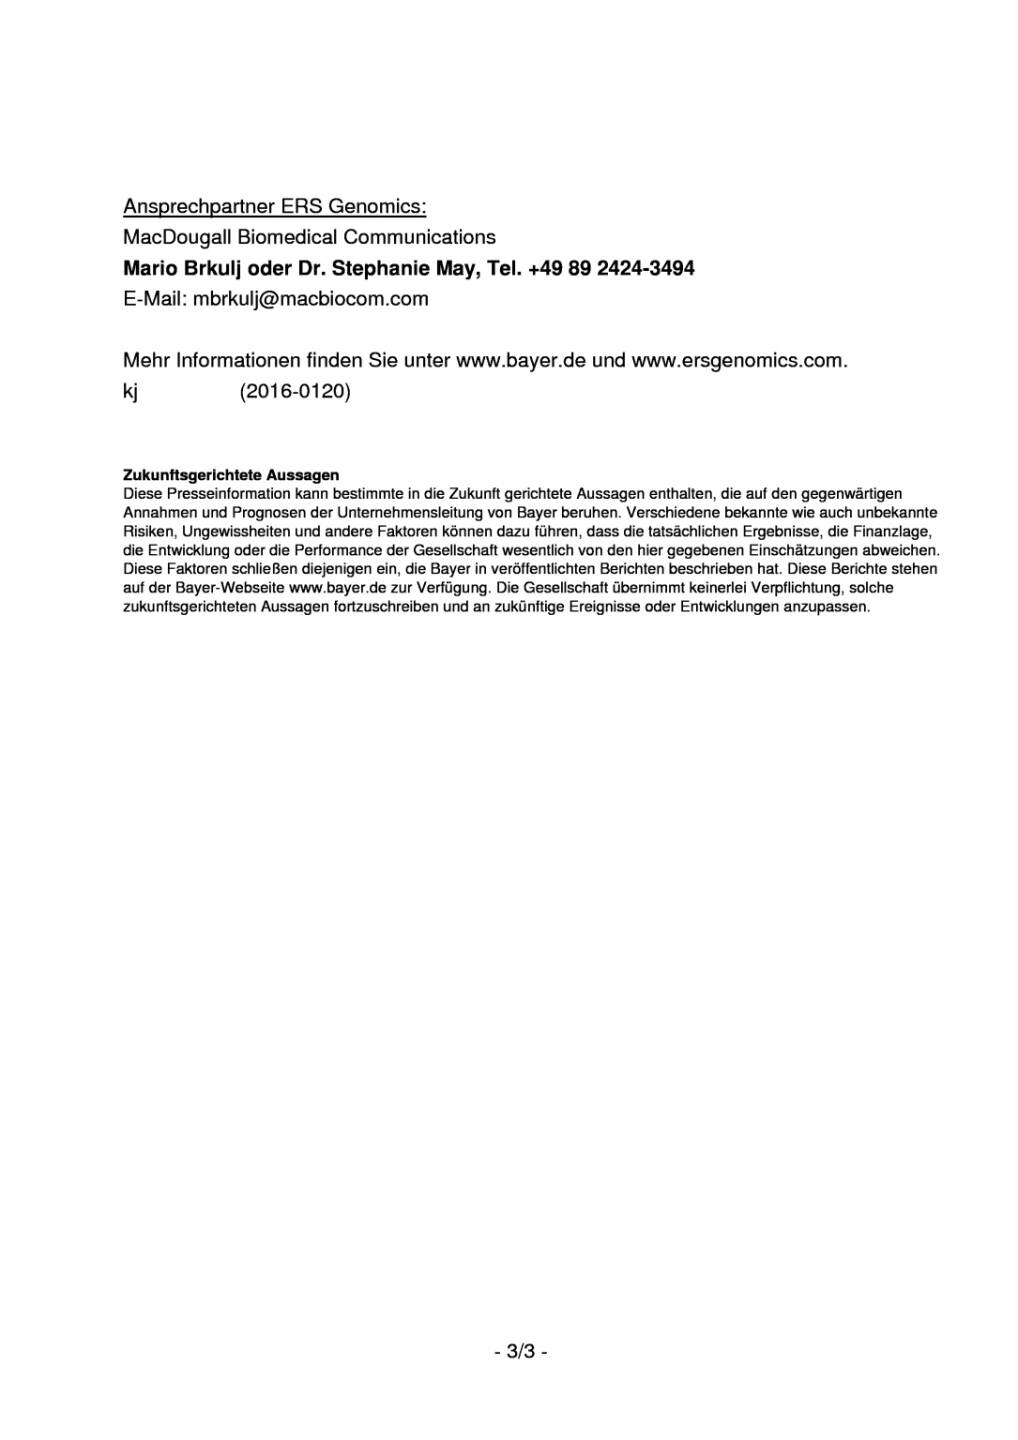 Bayer und ERS Genomics vereinbaren Lizenz für Patente zur Genom-Editierung , Seite 3/3, komplettes Dokument unter http://boerse-social.com/static/uploads/file_1070_bayer_und_ers_genomics_vereinbaren_lizenz_fur_patente_zur_genom-editierung.pdf